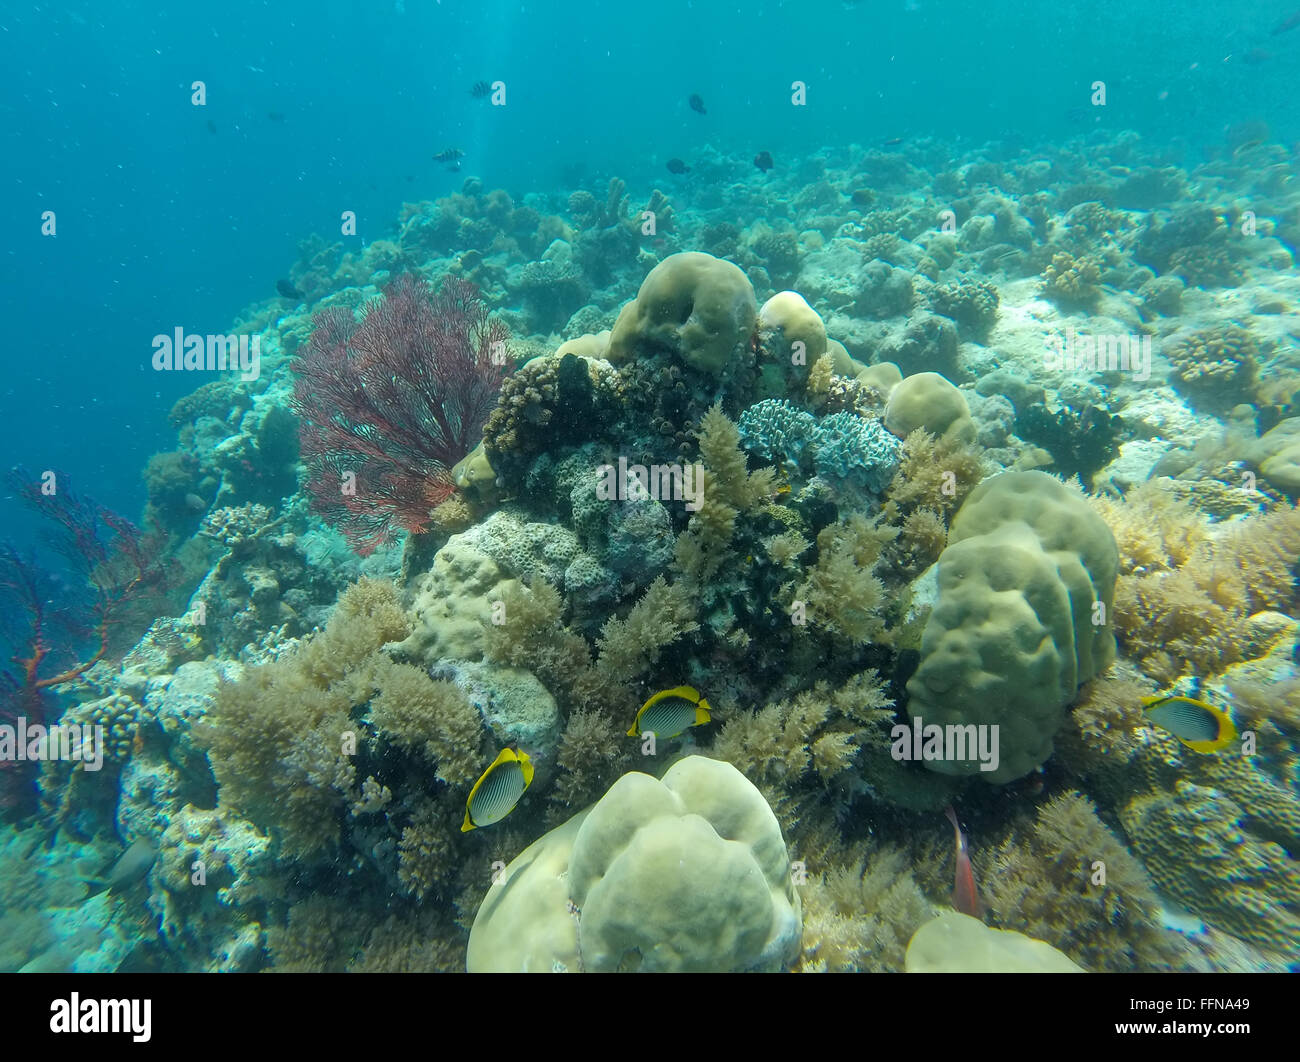 La vita marina, pesci, coralli marini sulla barriera corallina in Palau, Micronesia, Oceania Oceano Pacifico. Ecosistema naturale, natura, animali Foto Stock